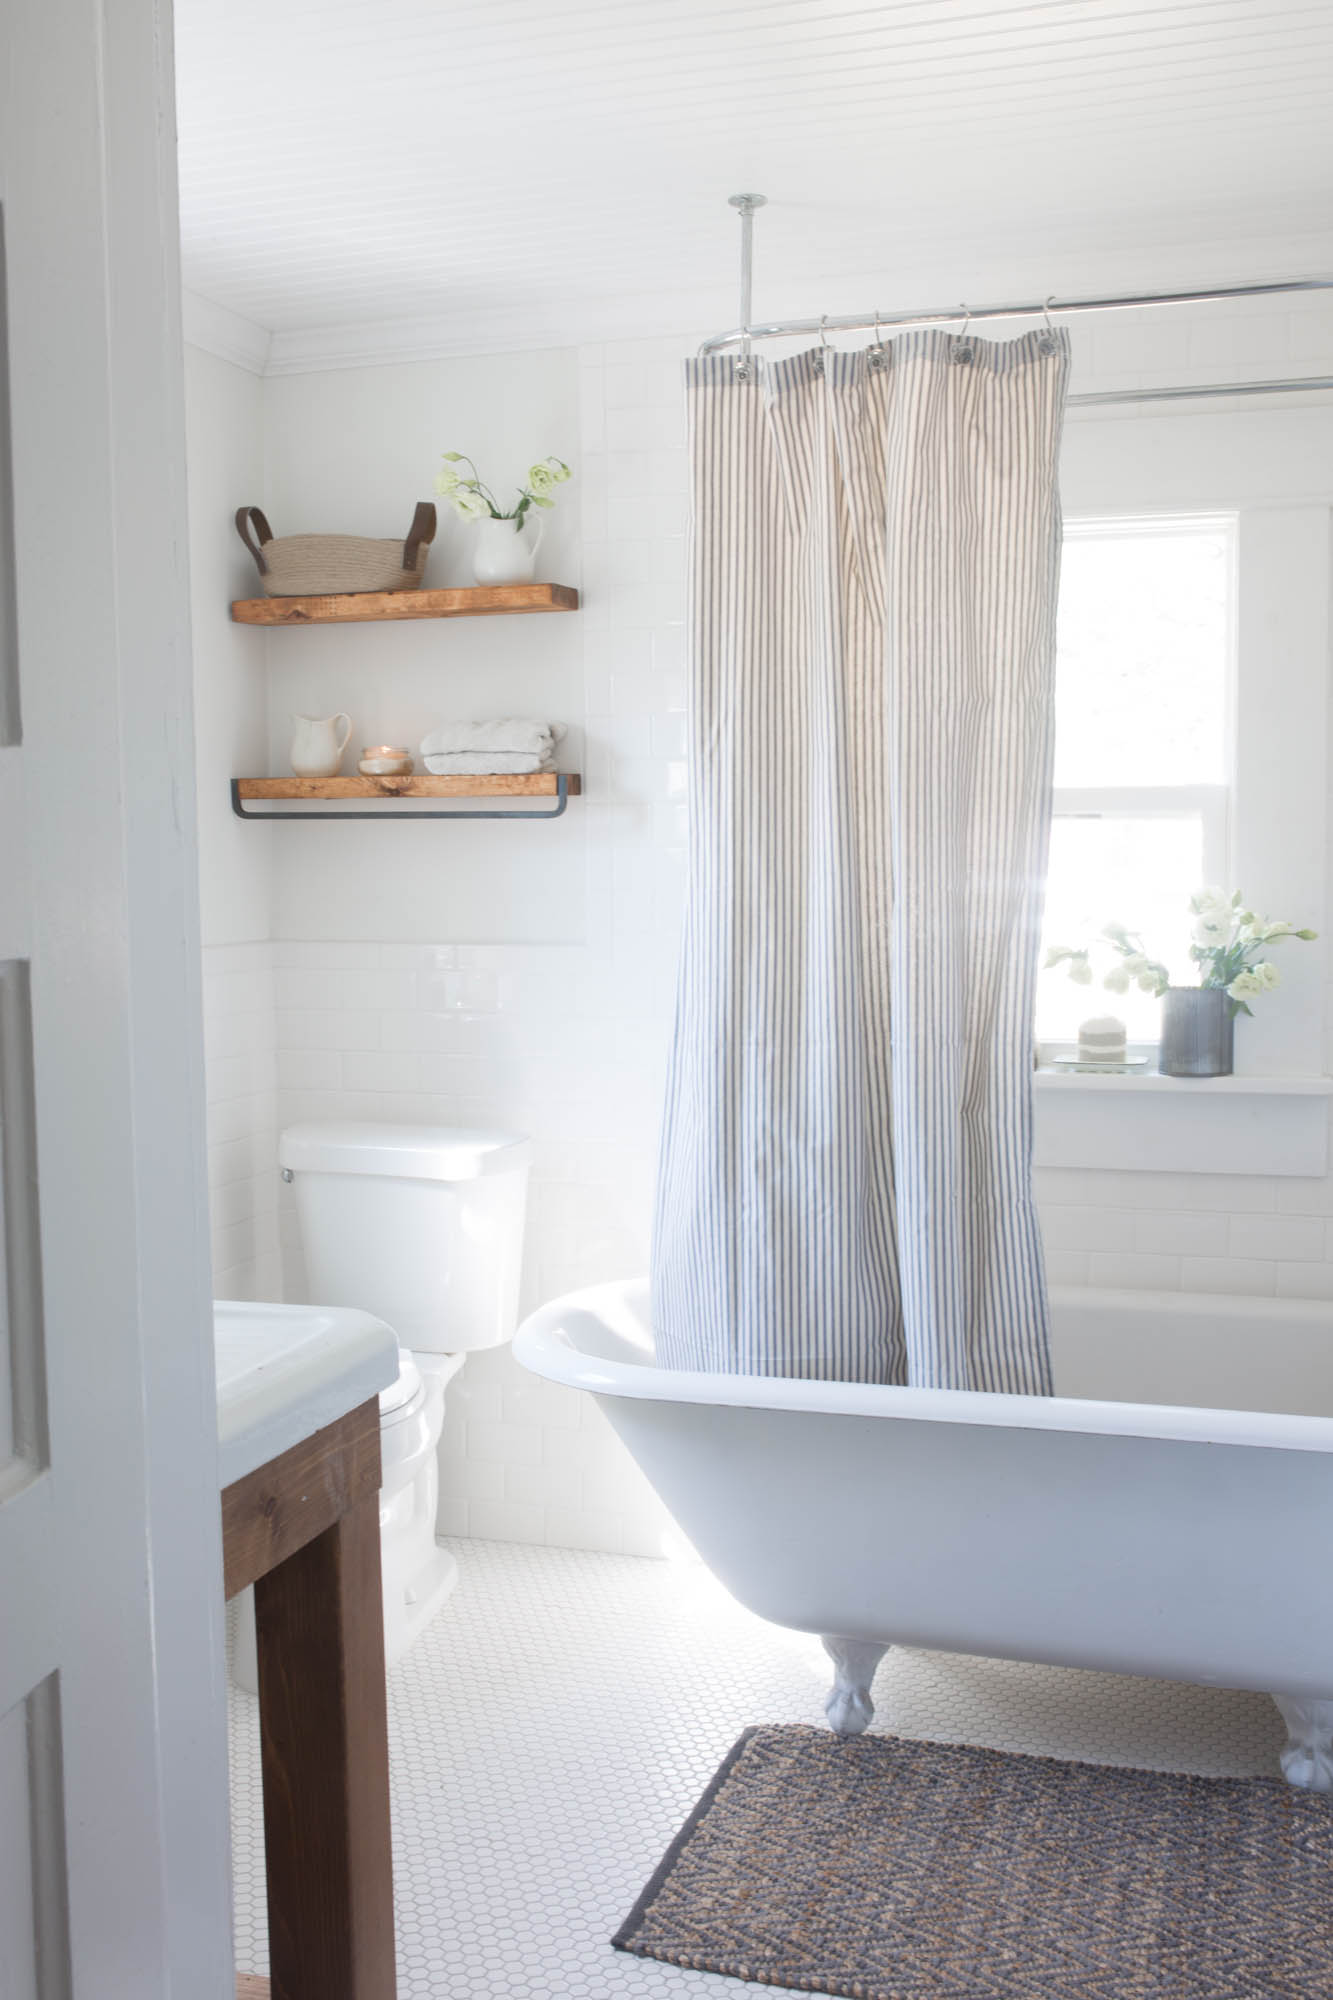 Simple Farmhouse Bathroom Design Ideas for Small Space